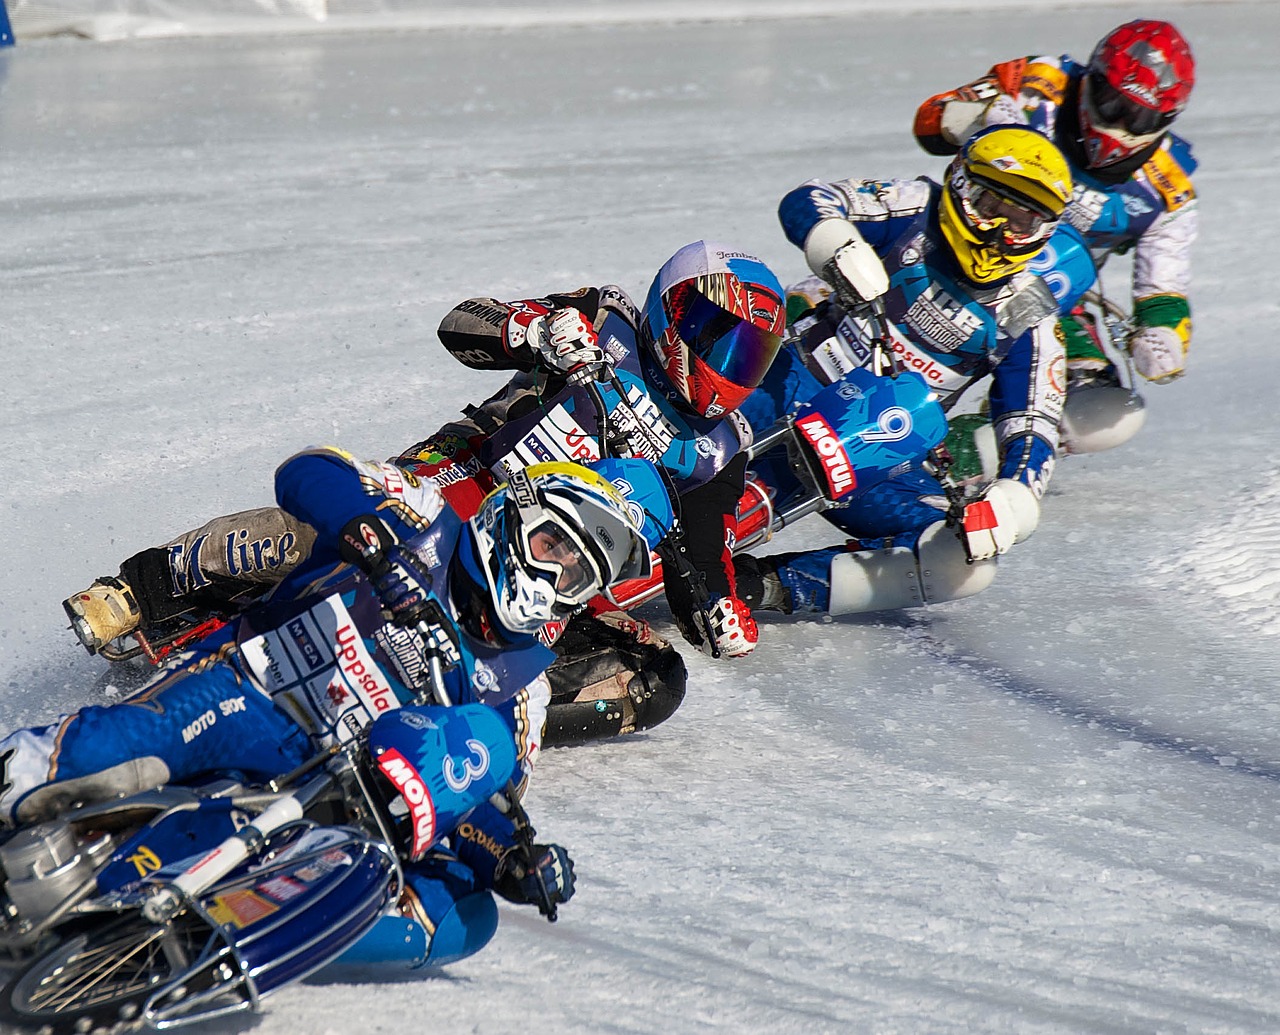 Ice racing